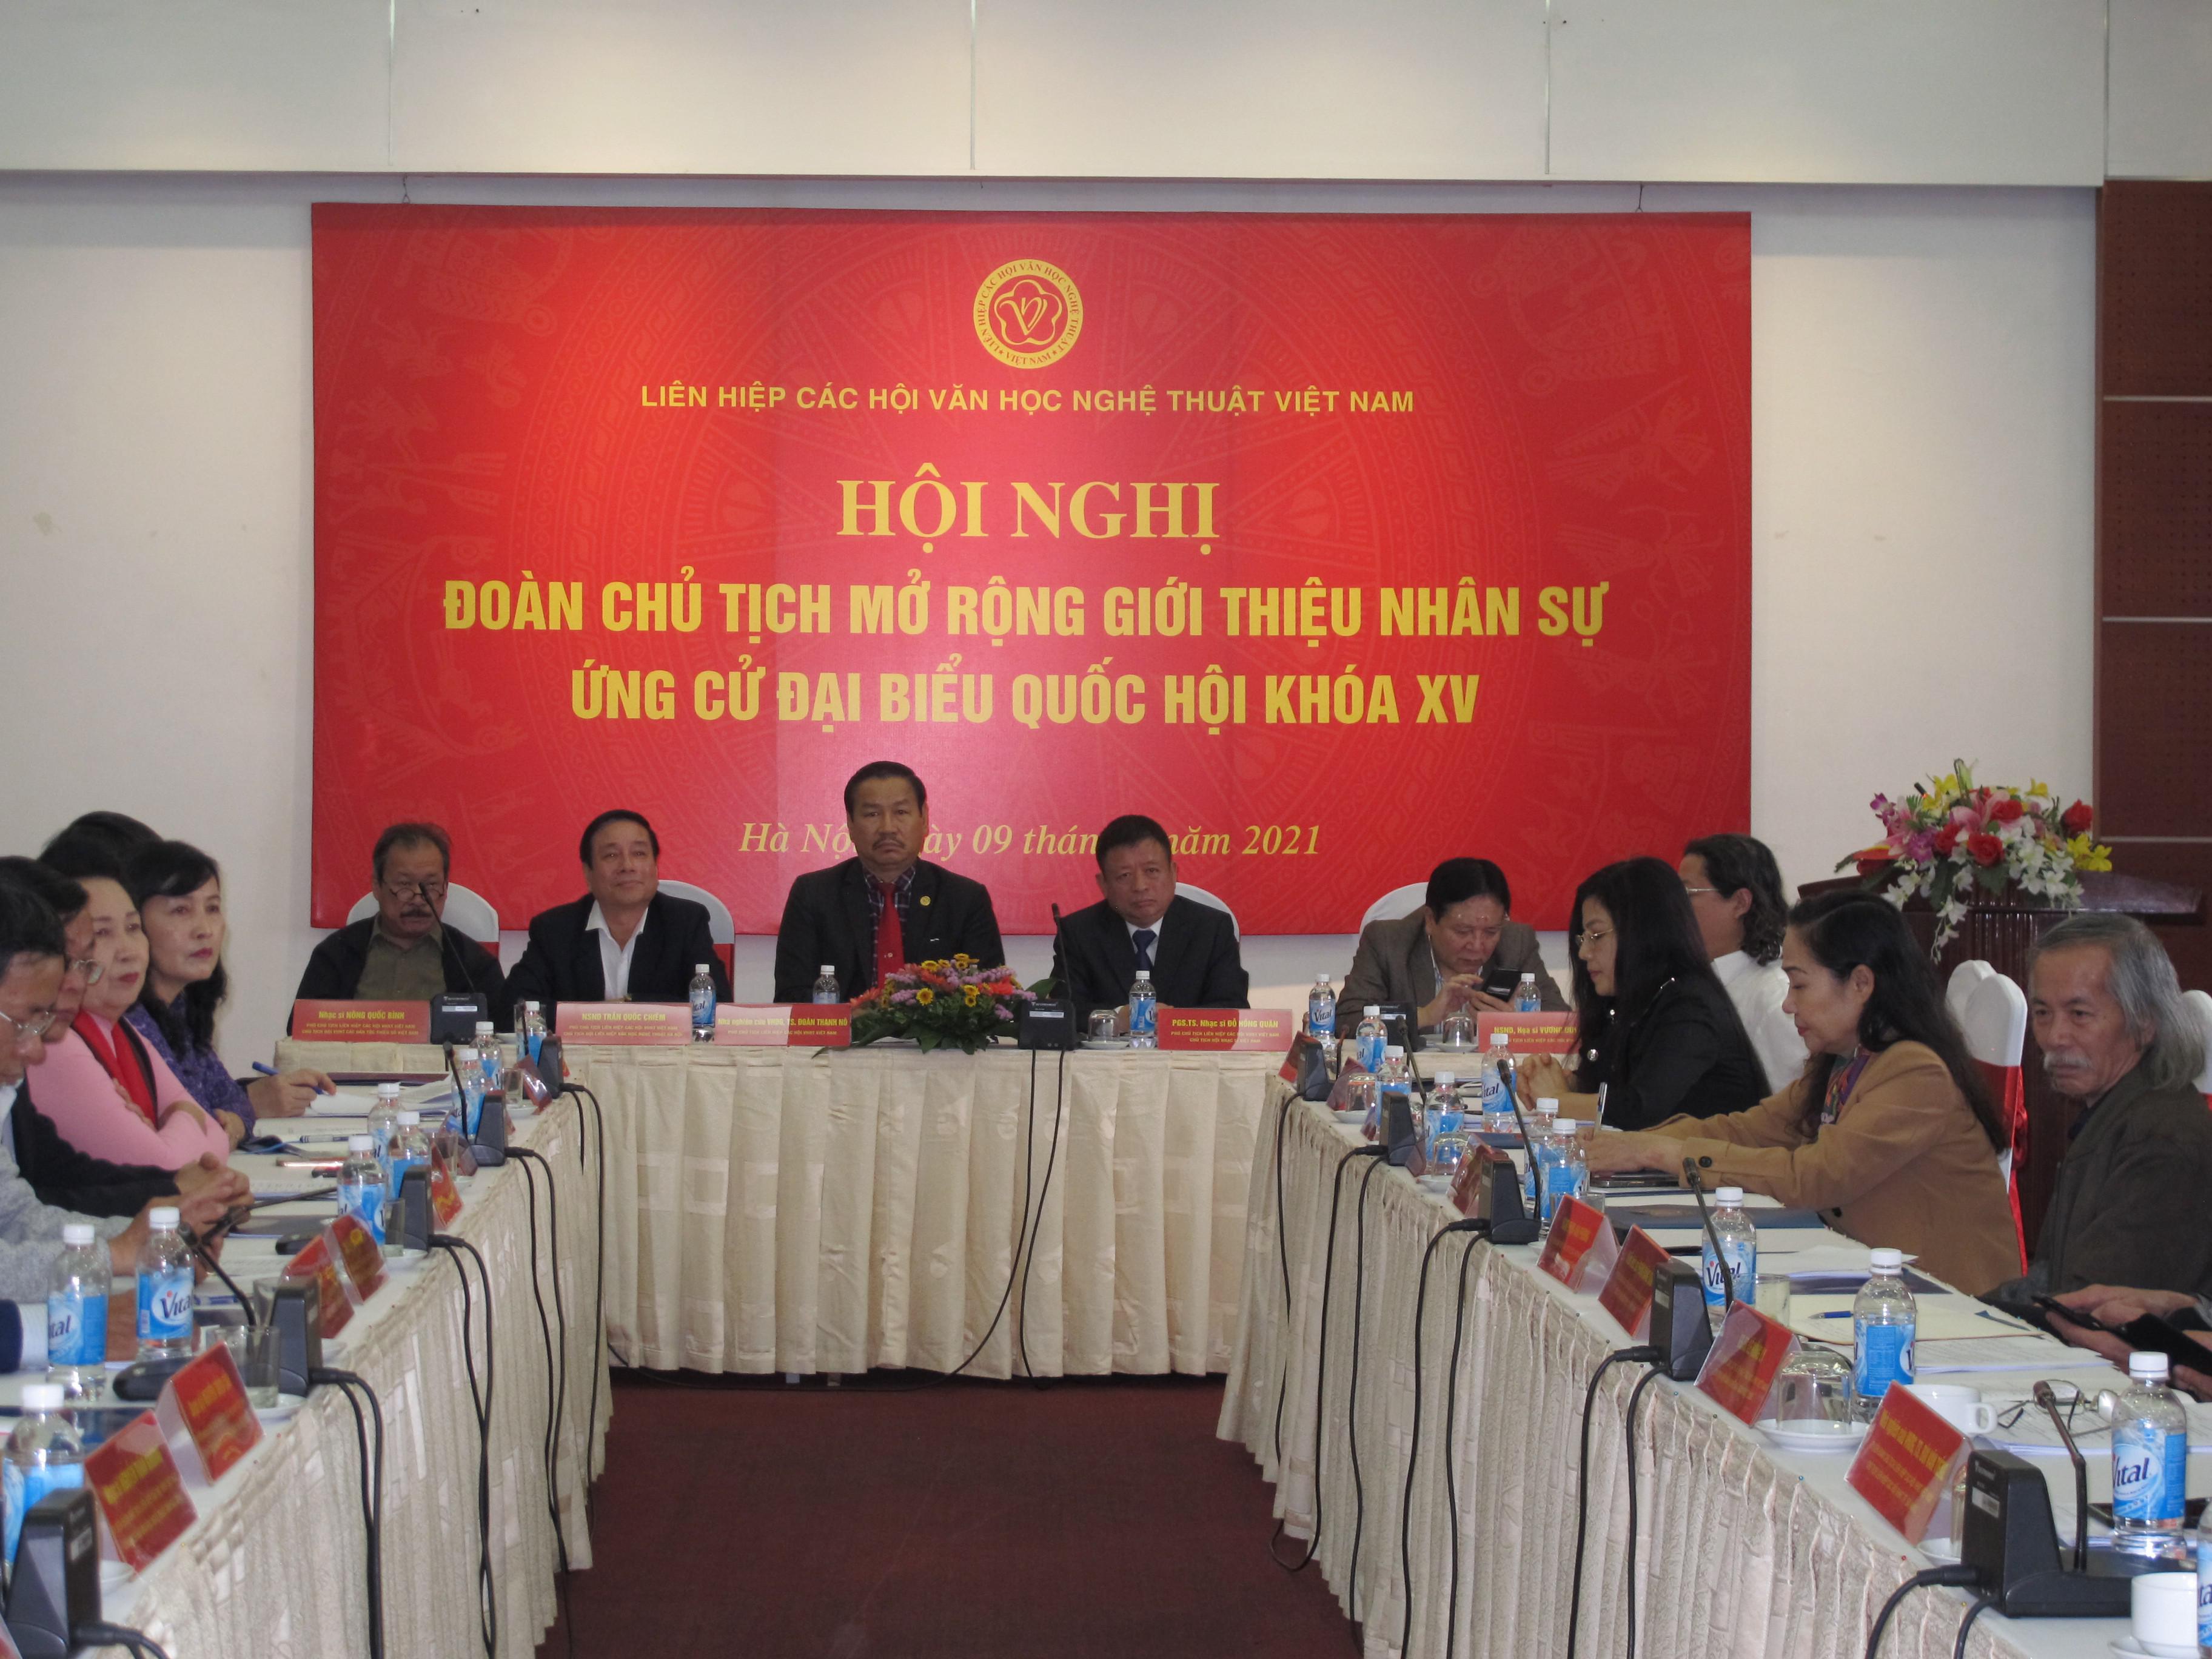 Liên hiệp các Hội Văn học nghệ thuật Việt Nam giới thiệu nhân sự ứng cử Đại biểu Quốc Hội khóa XV - 1